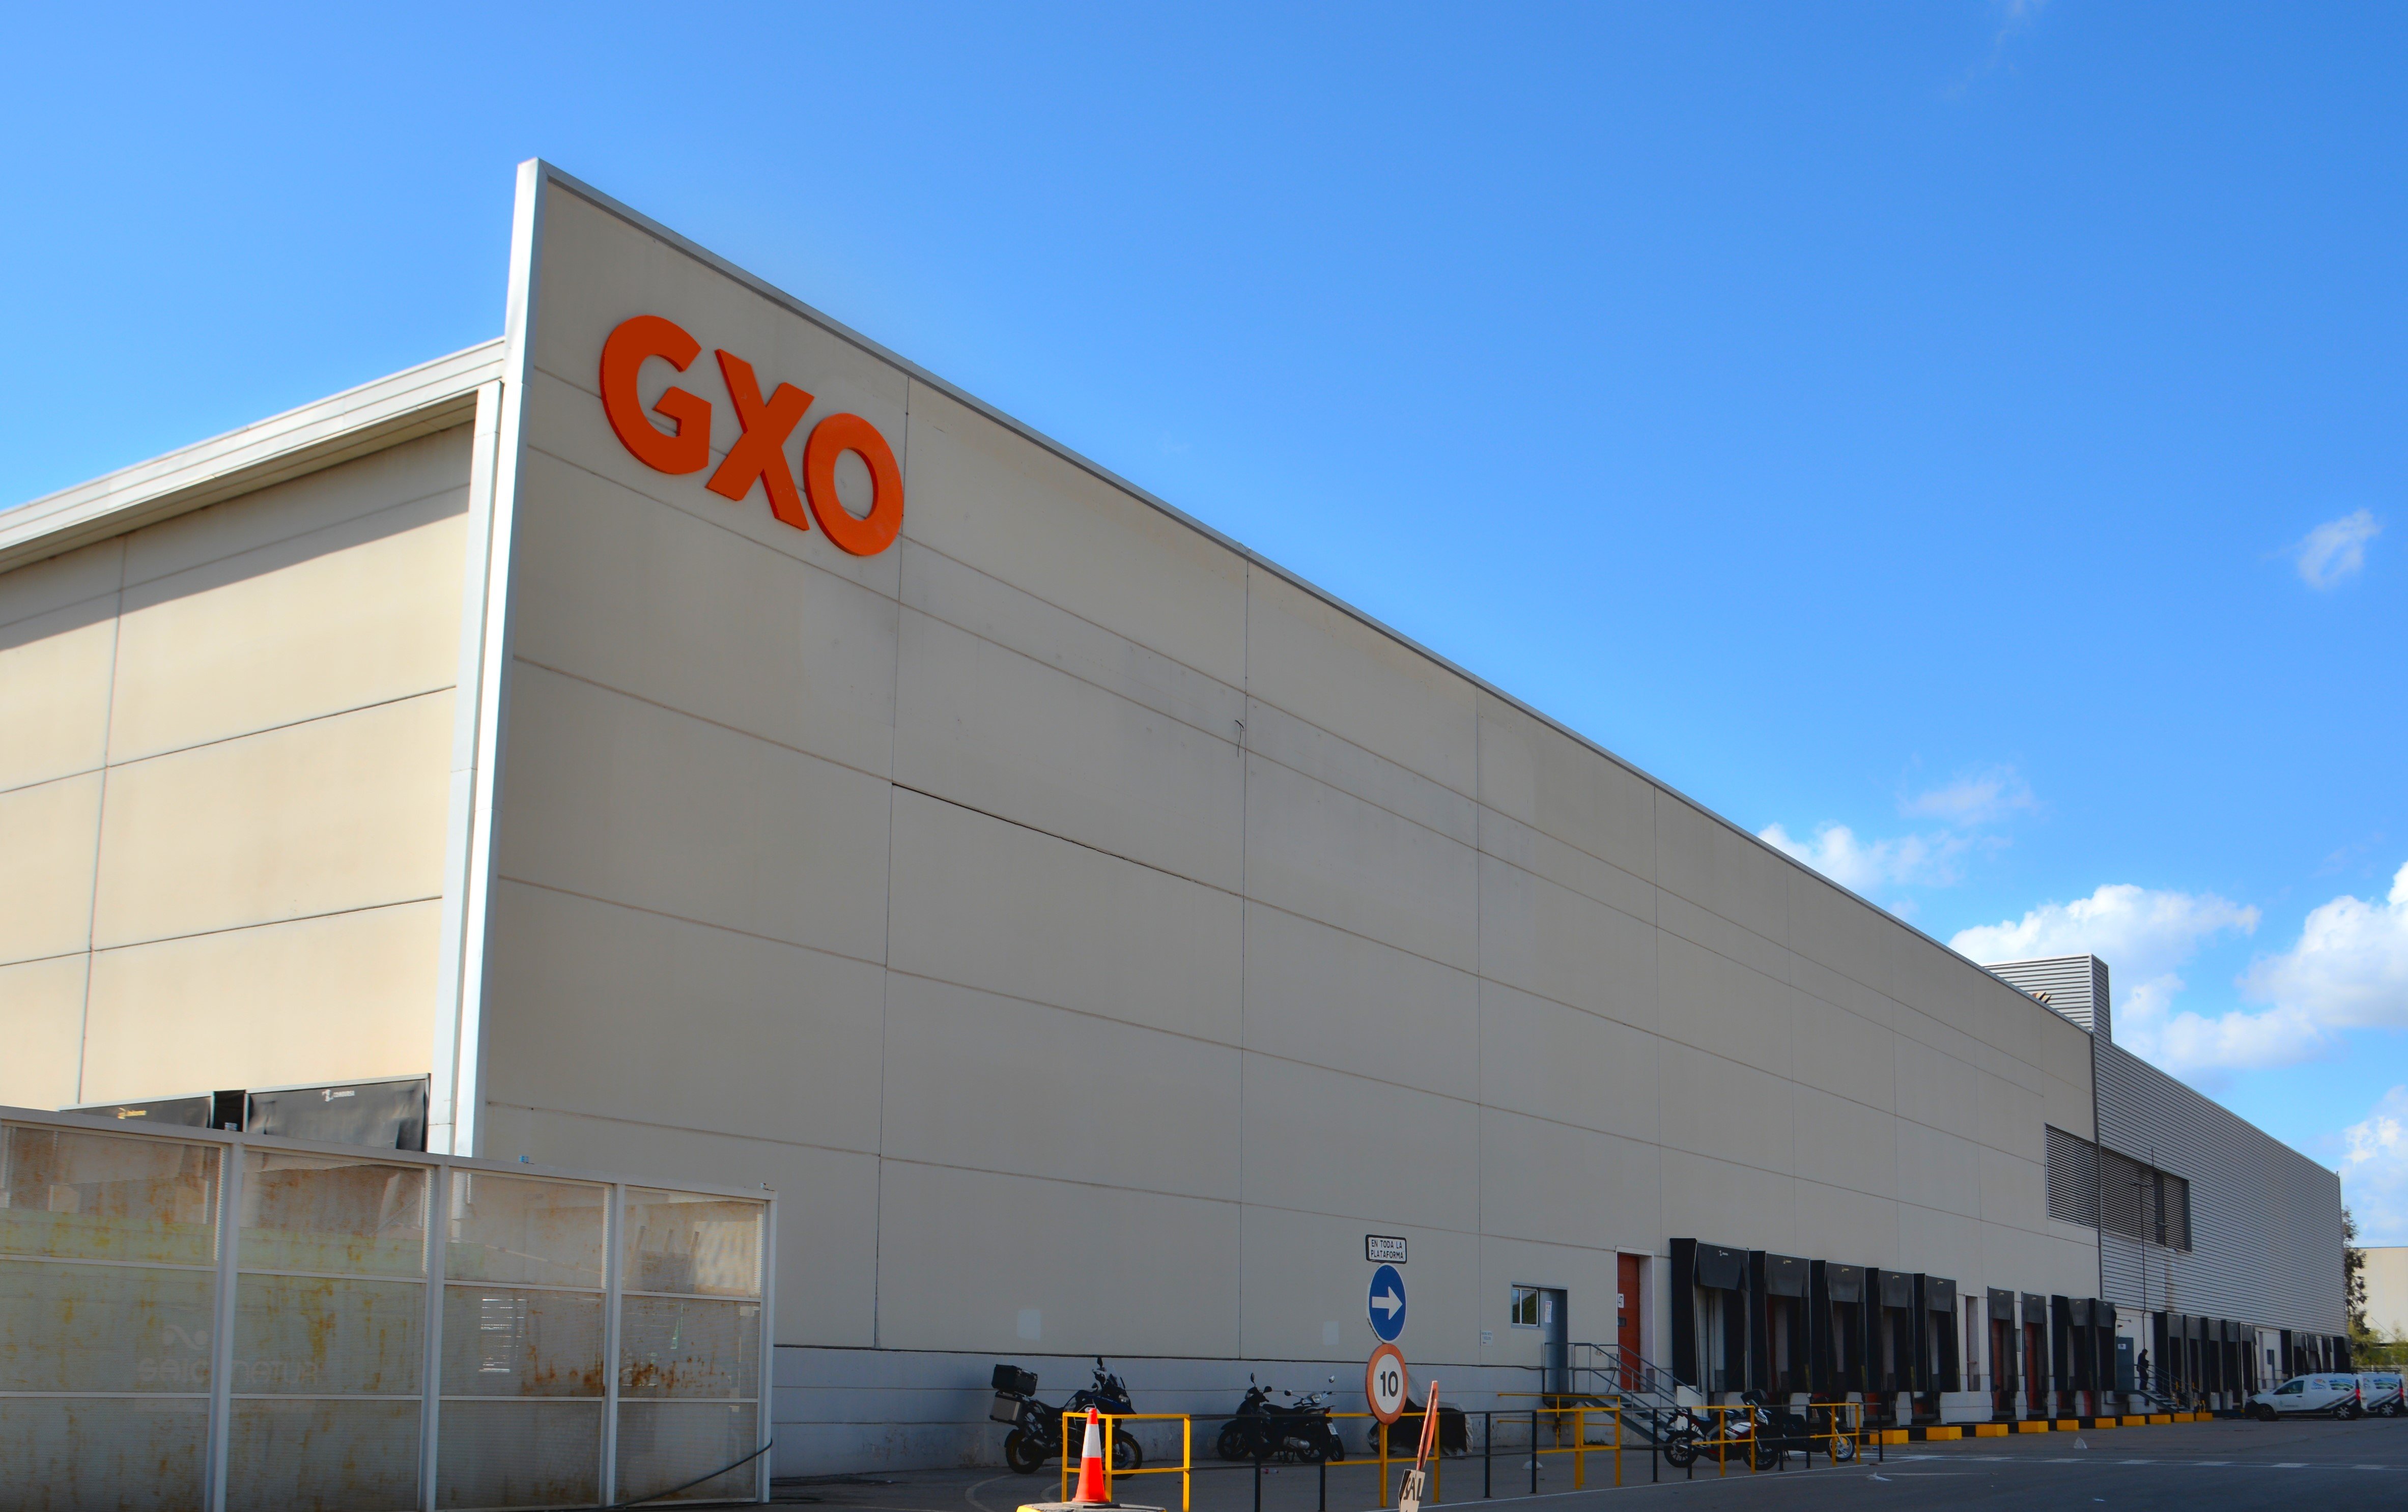 GXO consolida la seva aliança amb Carrefour amb noves operacions de la seva branca logística